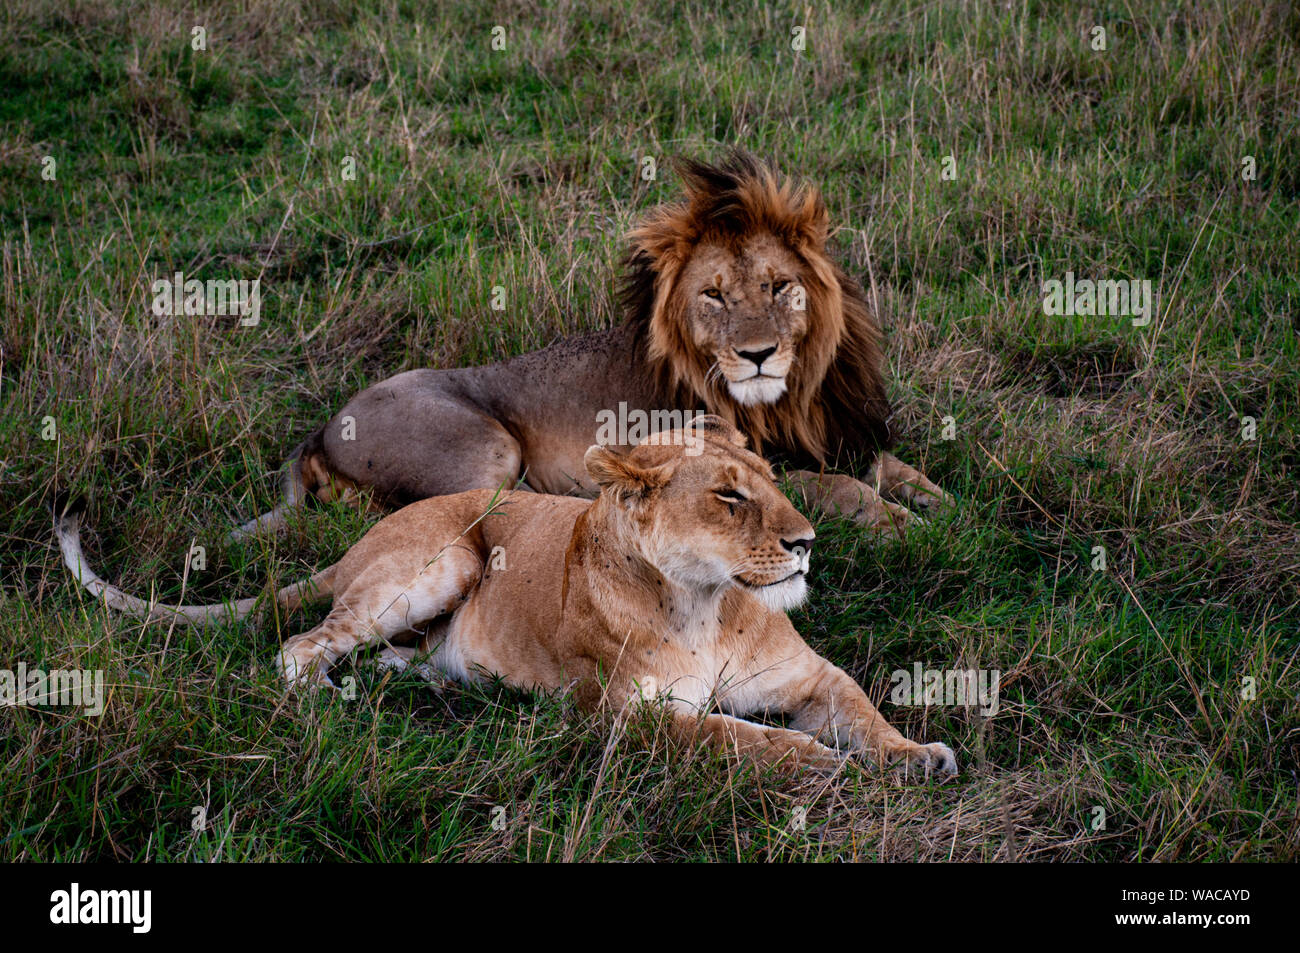 Löwen-Paar (Löwen-Pärchen) liegt träumend zusammen in der Masai Mara, Löwe schaut direkt in die Kamera Foto Stock